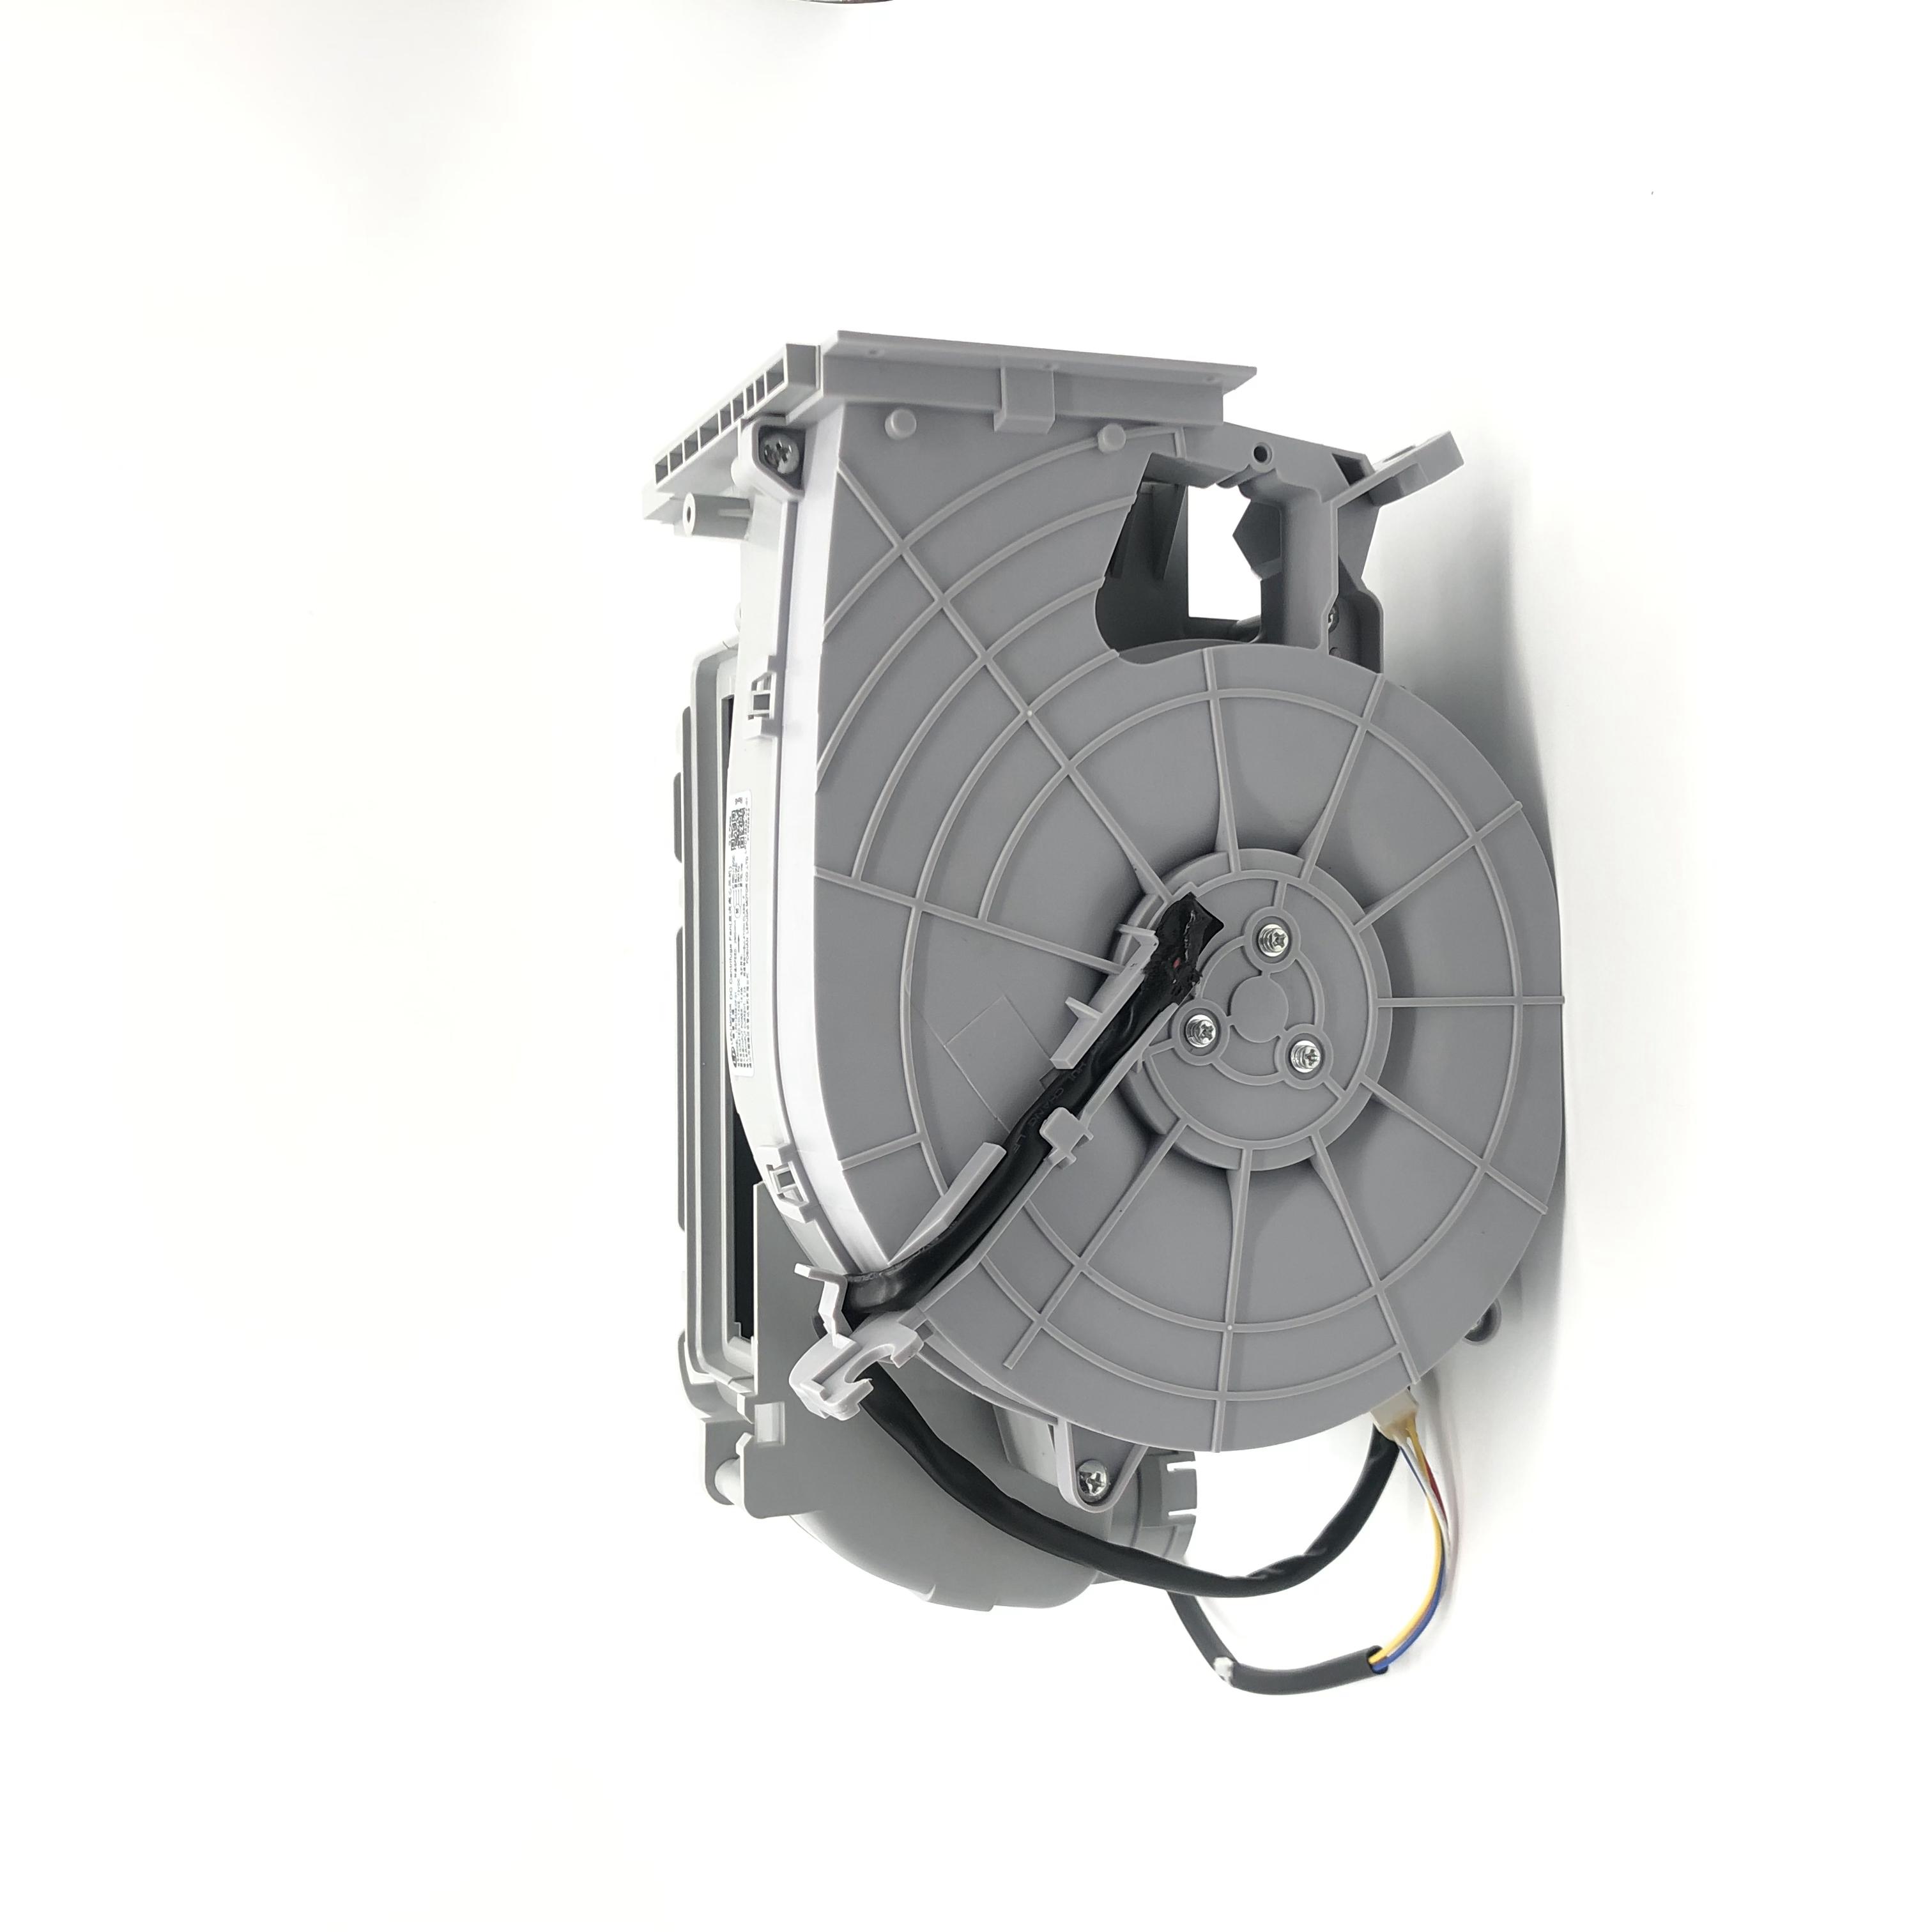 Taze Klima BLDC Fan Tertibatını Değiştirin satın al,Taze Klima BLDC Fan Tertibatını Değiştirin Fiyatlar,Taze Klima BLDC Fan Tertibatını Değiştirin Markalar,Taze Klima BLDC Fan Tertibatını Değiştirin Üretici,Taze Klima BLDC Fan Tertibatını Değiştirin Alıntılar,Taze Klima BLDC Fan Tertibatını Değiştirin Şirket,